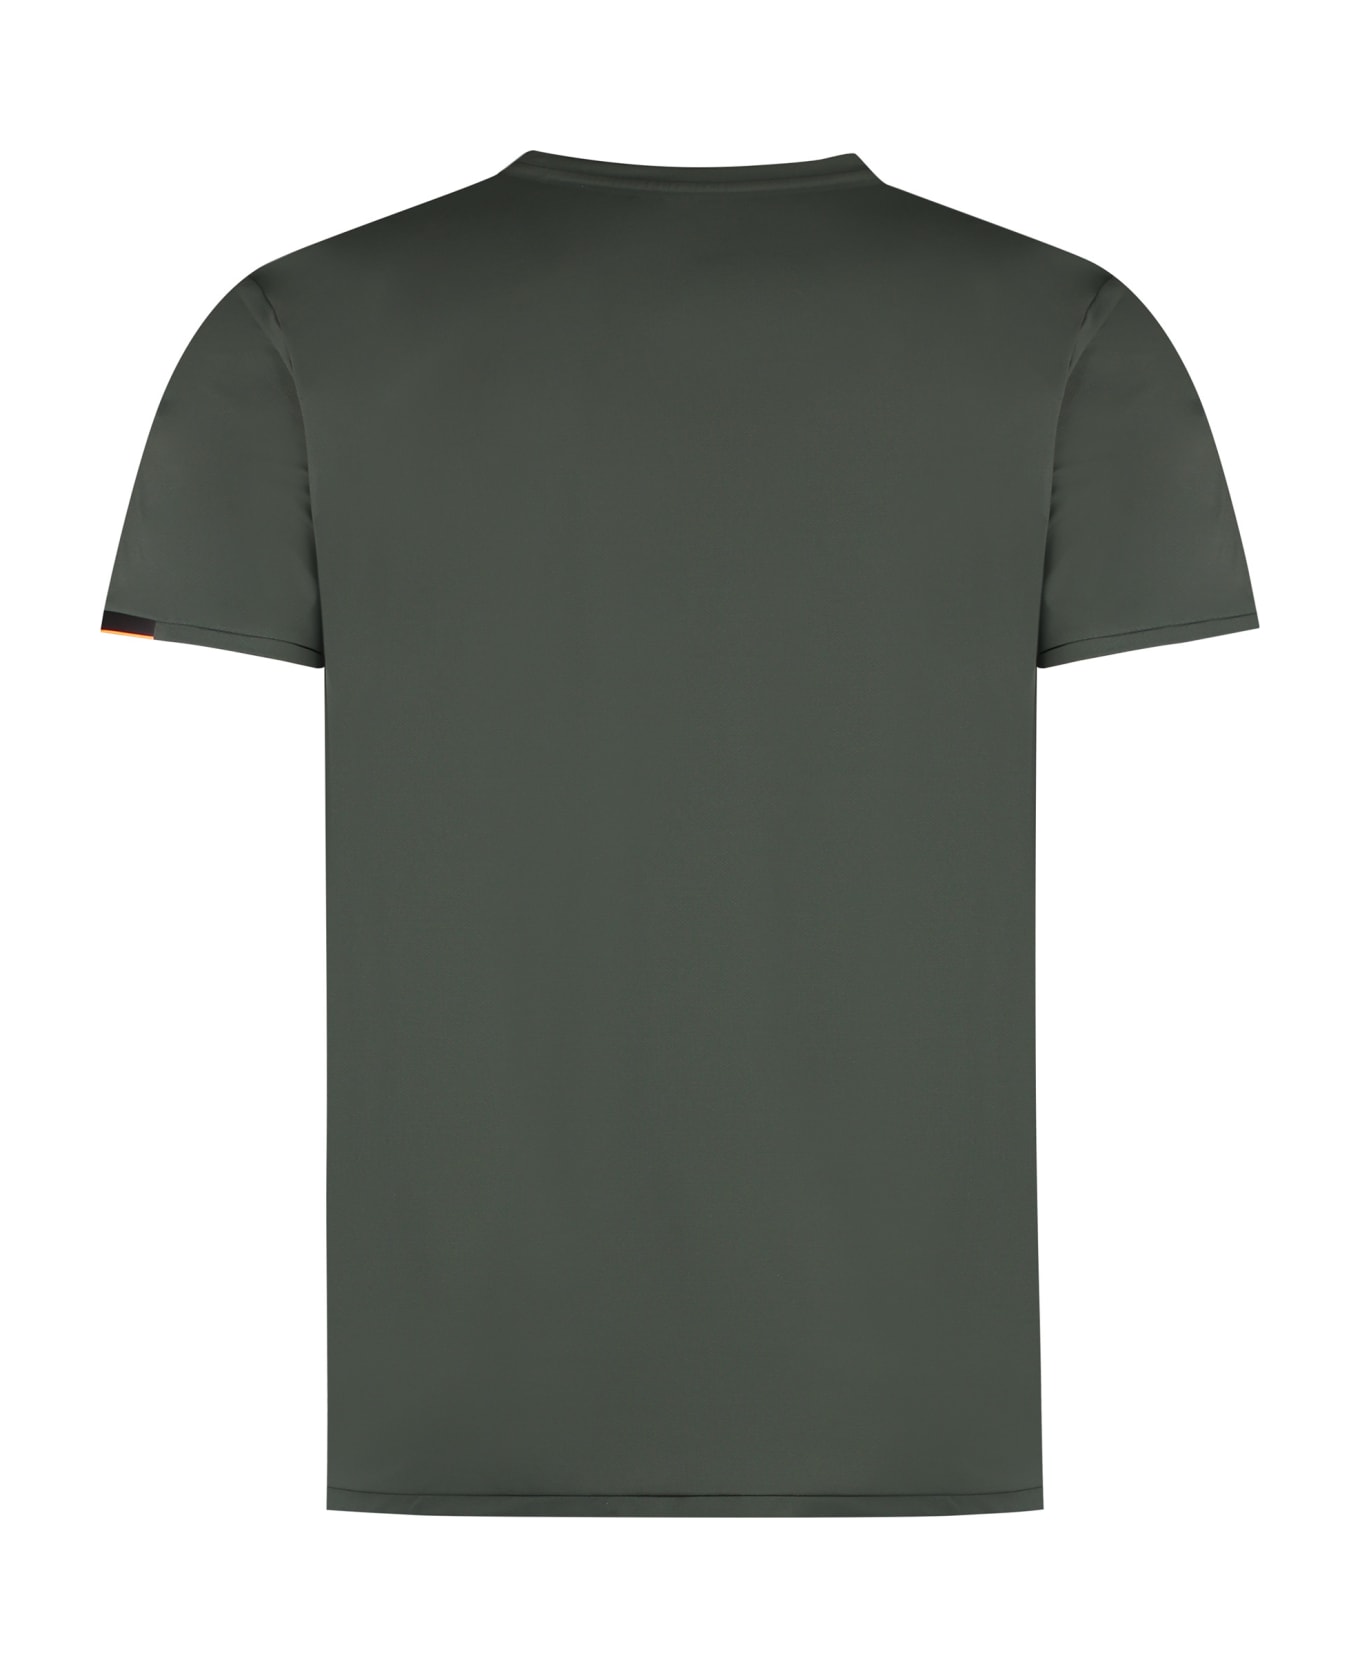 RRD - Roberto Ricci Design Oxford Techno Fabric T-shirt - Green シャツ